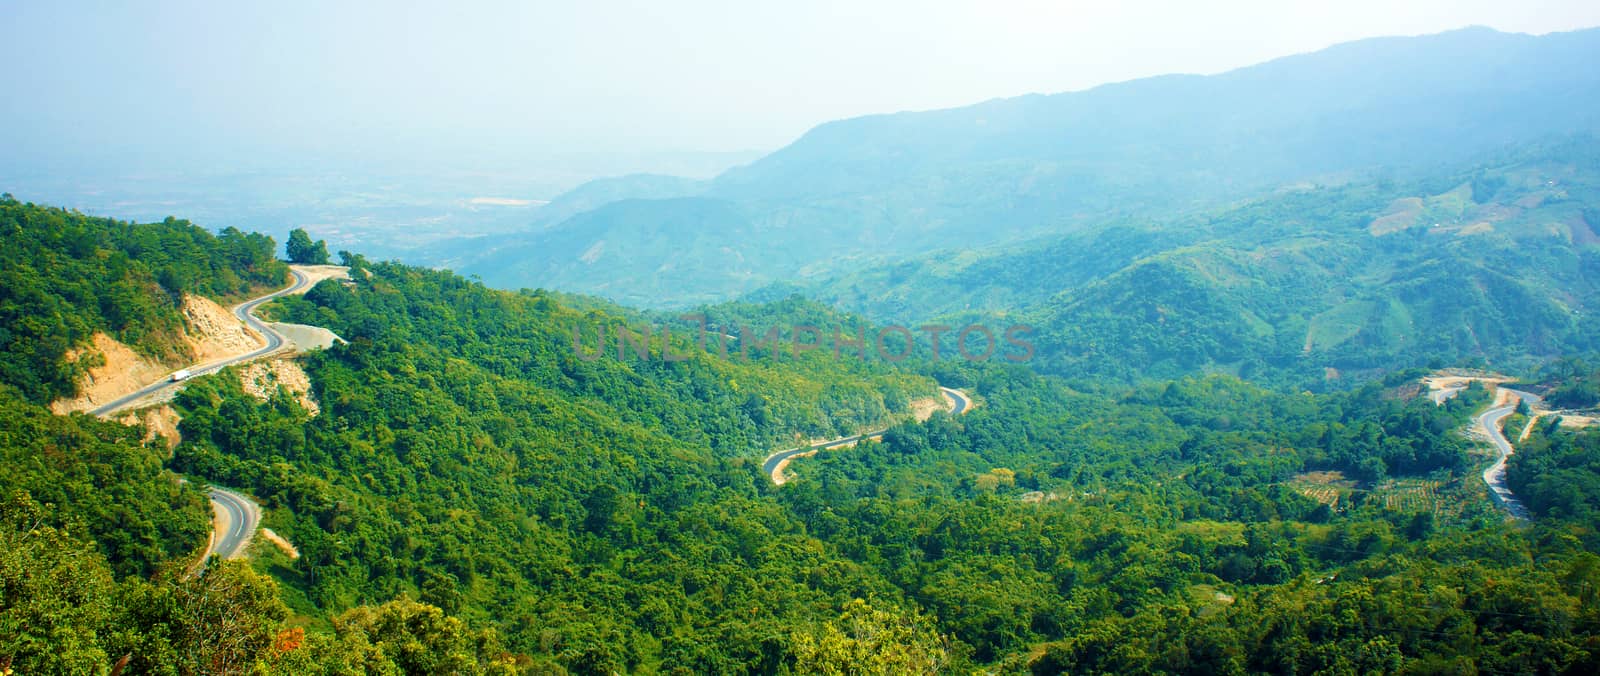 Wonderful scene, Ngoan Muc mountain pass by xuanhuongho